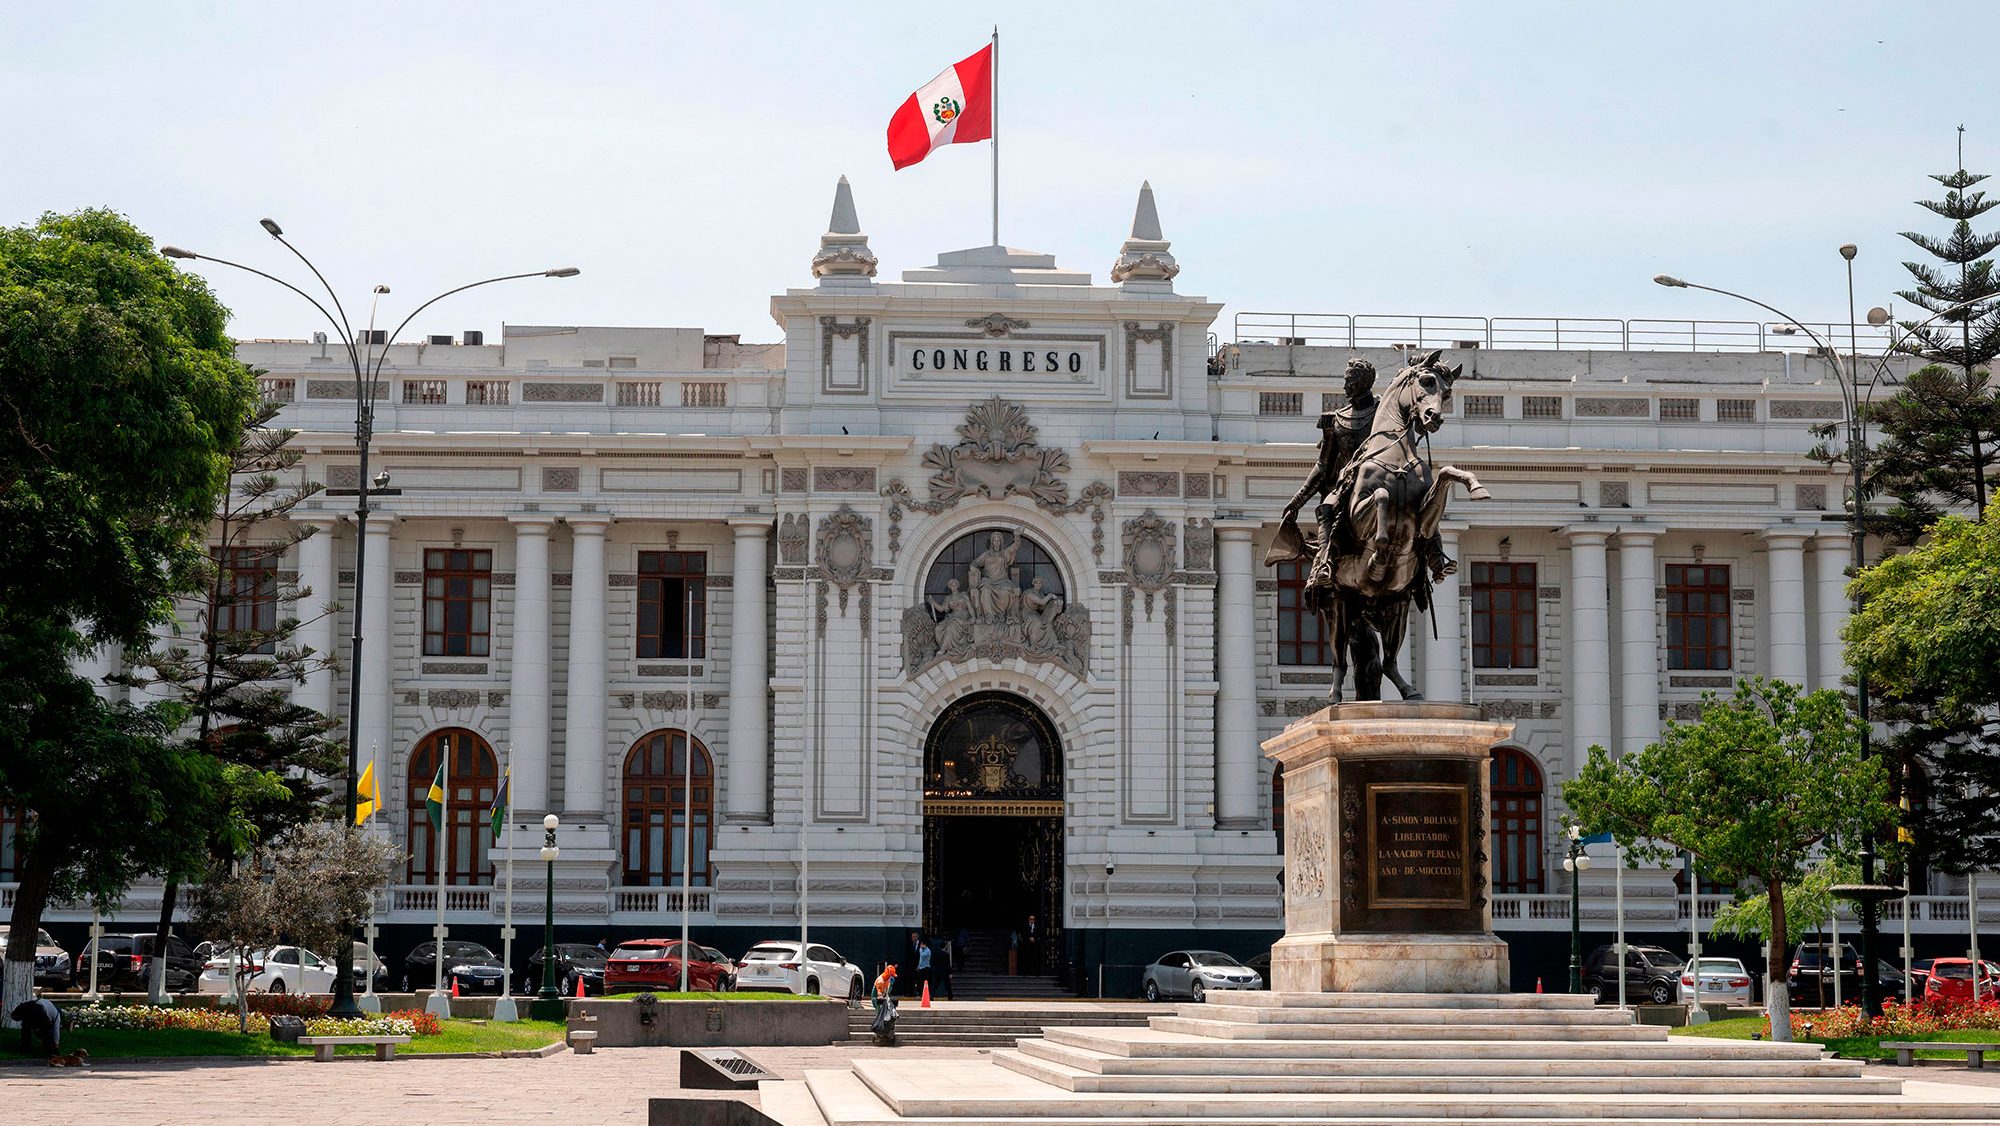 S&P reduce la calificación crediticia de Perú debido a la
“incertidumbre política”